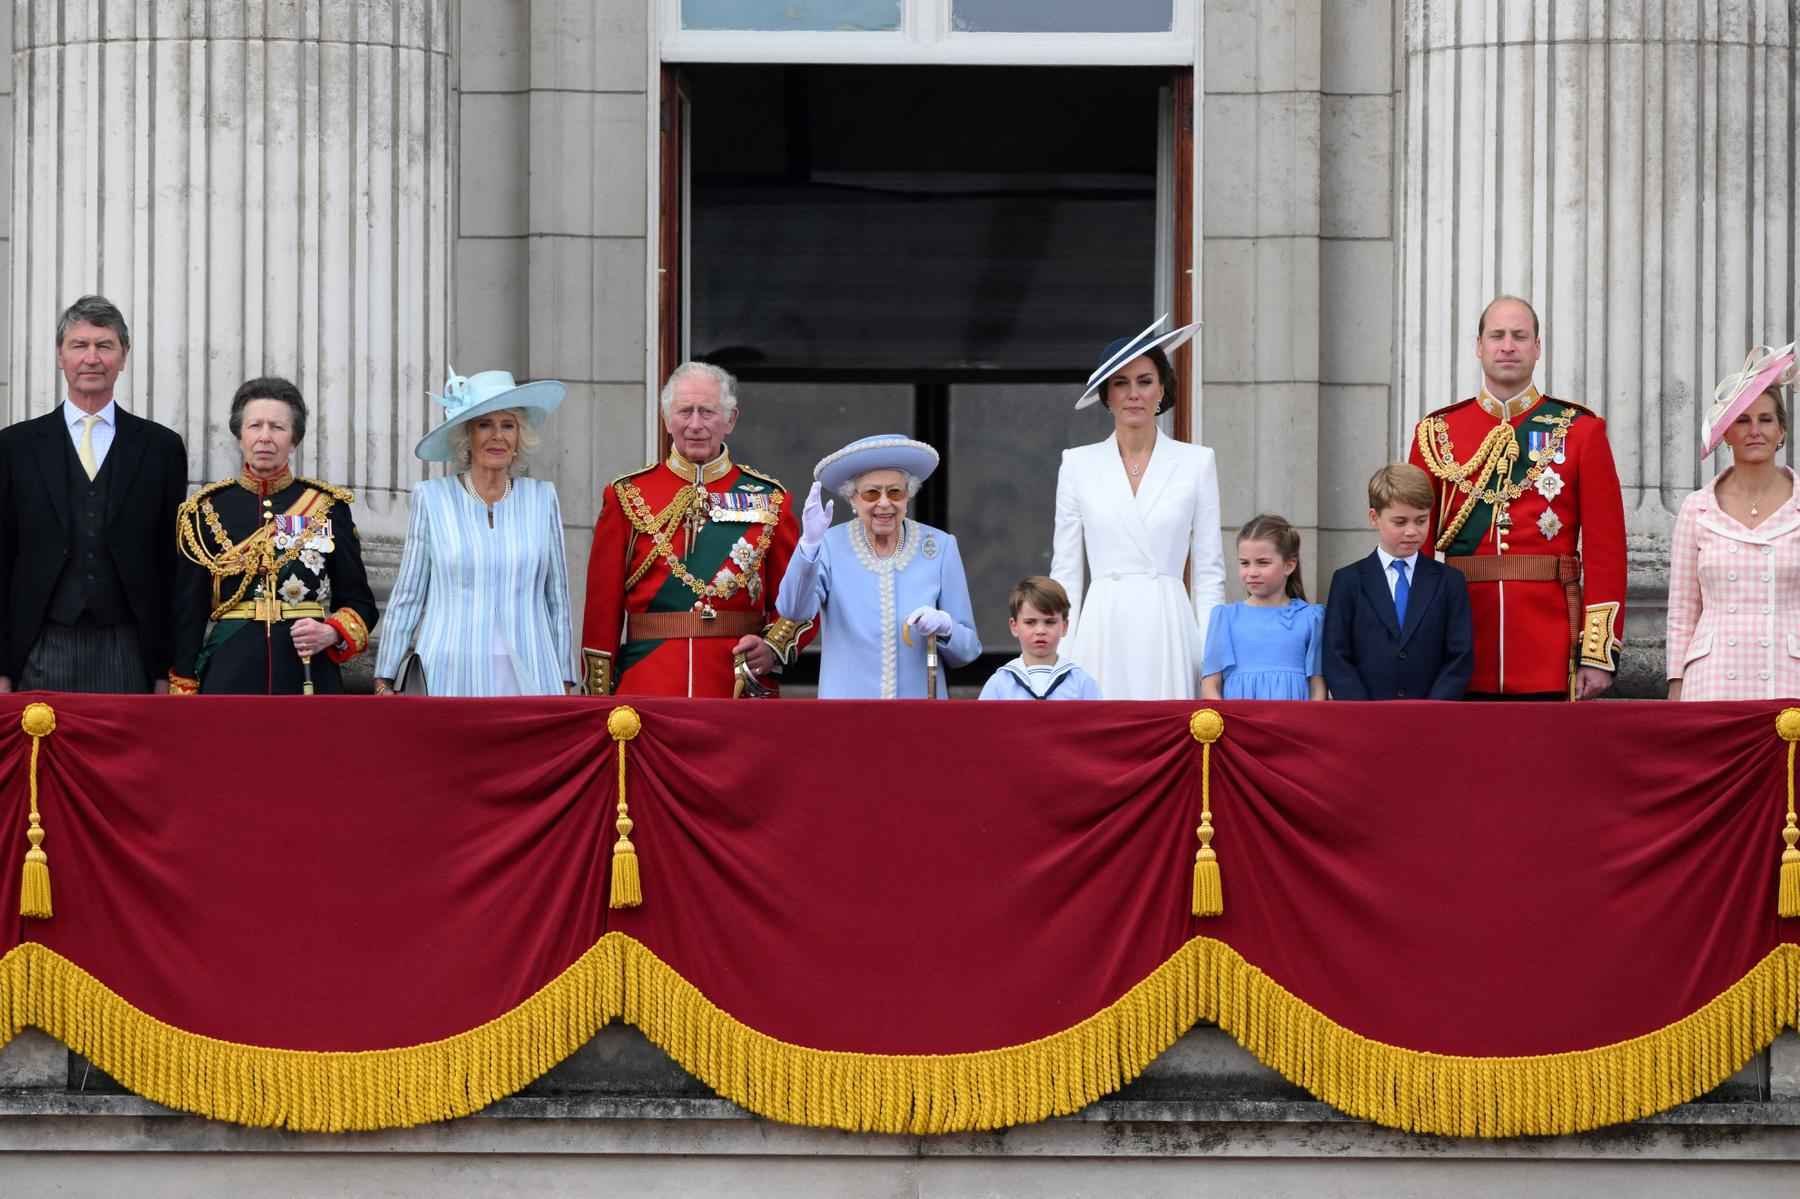 Elizabeth II aclamada no início da celebração do jubileu de platina - Daniel LEAL / AFP